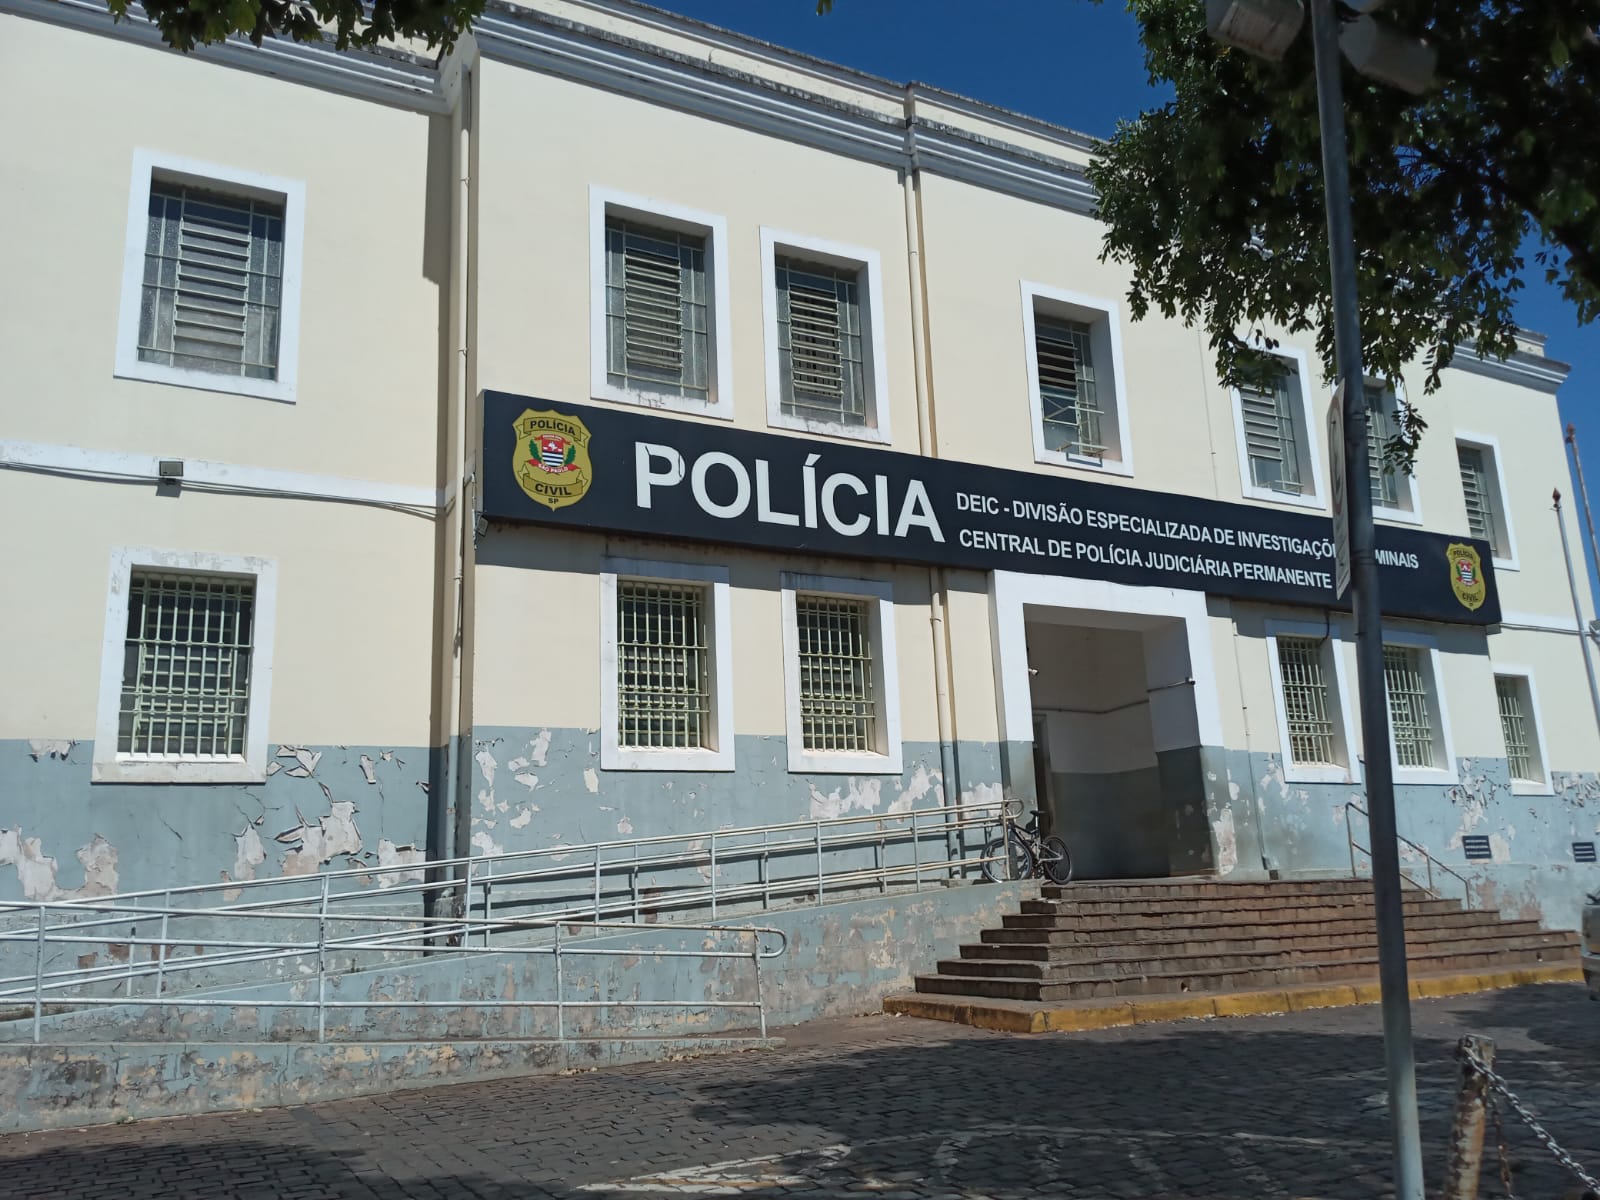 Morte de adolescente após briga em jogo do Brasil: Polícia Civil vê  motivação passional em confusão, Ribeirão Preto e Franca